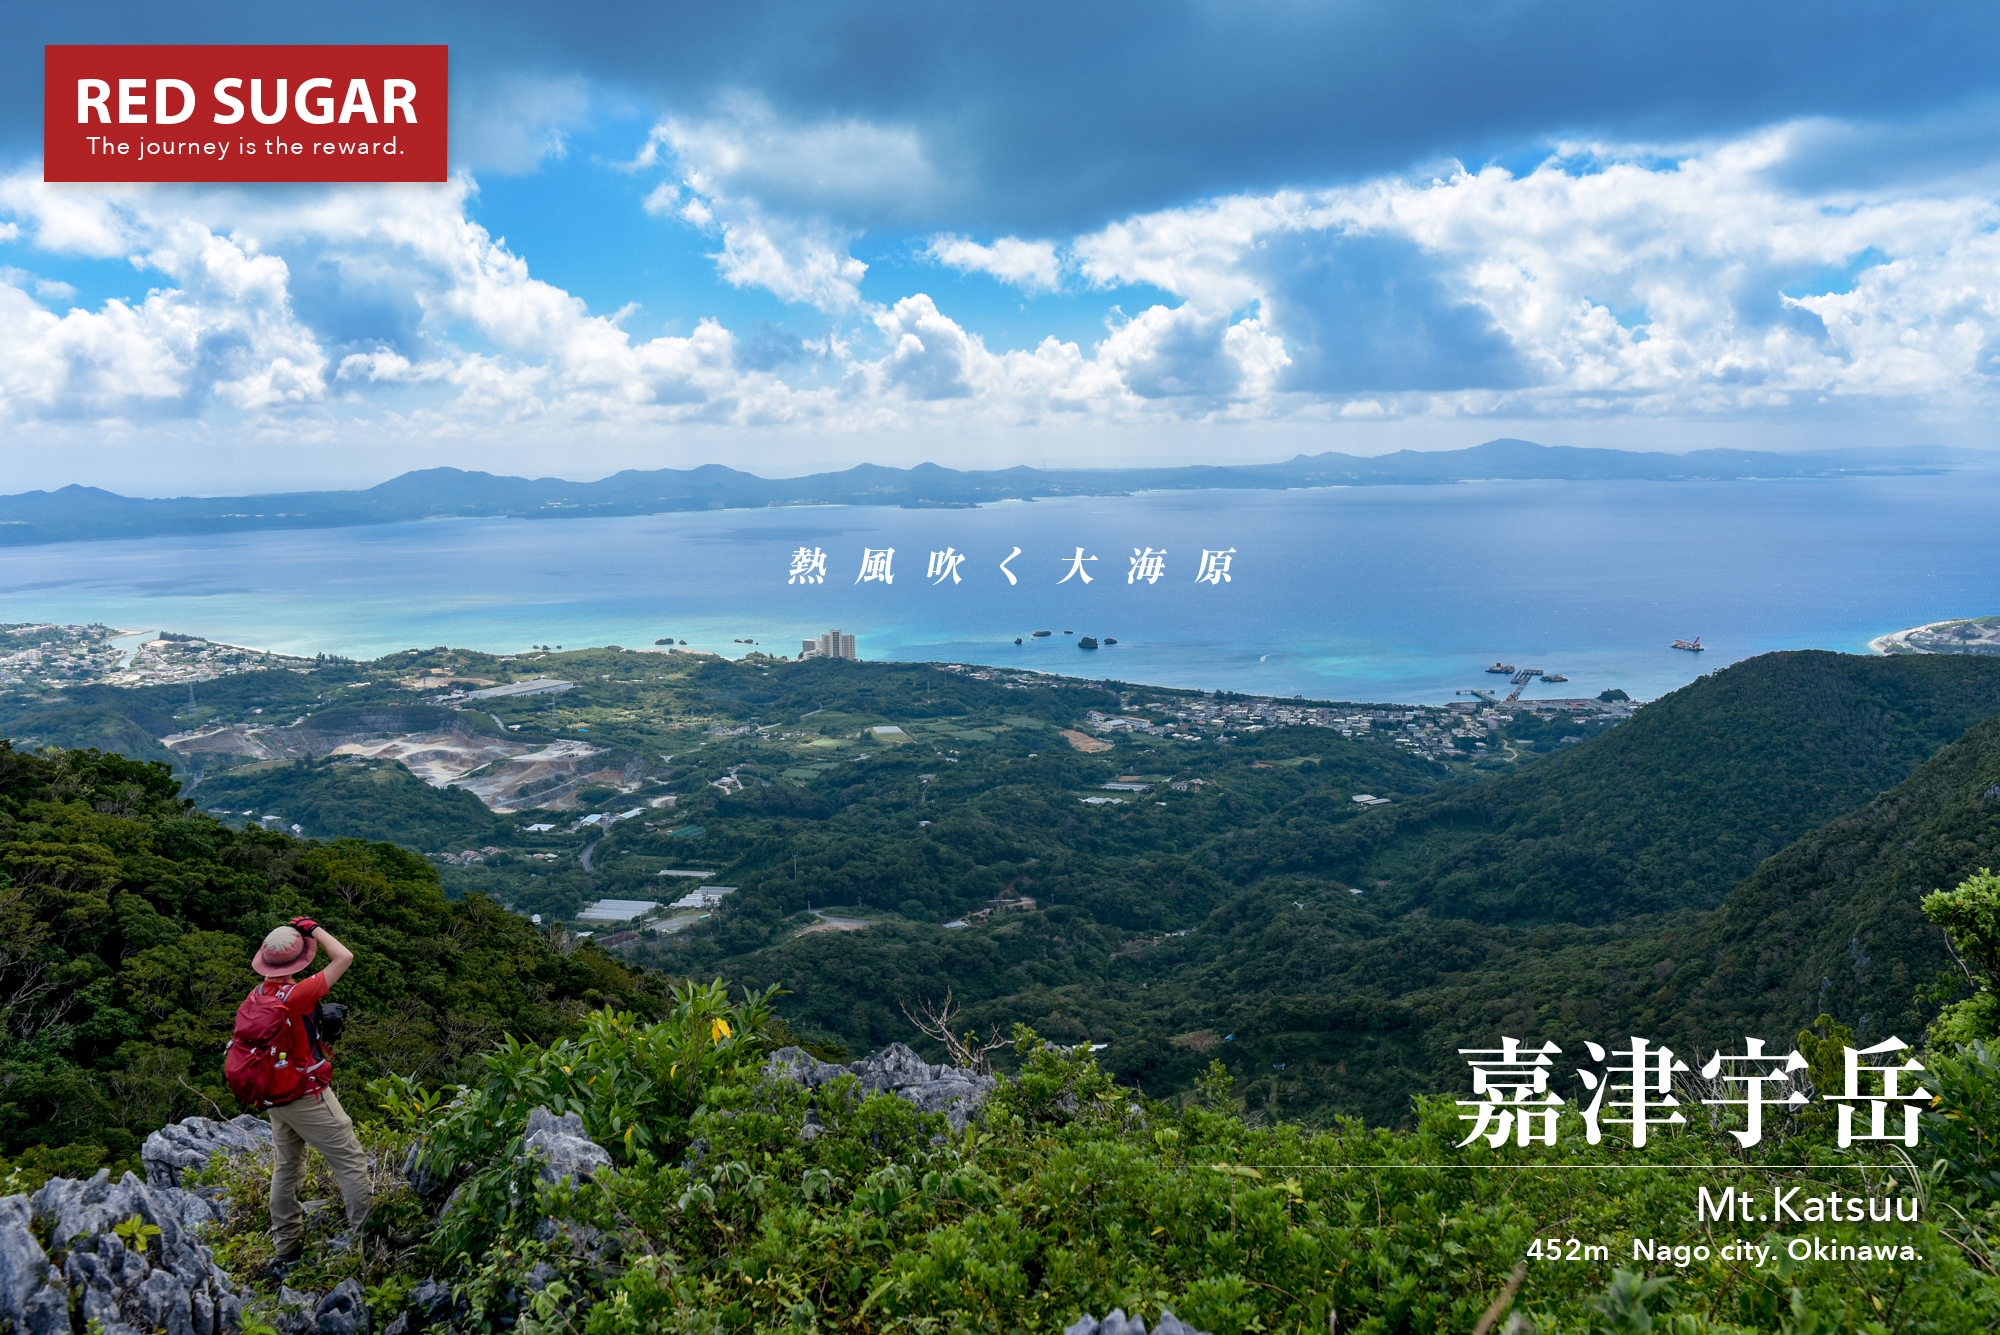 沖縄 嘉津宇岳 南国のジャングルの先に広がる青い空と海の世界 沖縄の山を歩く旅 Red Sugar